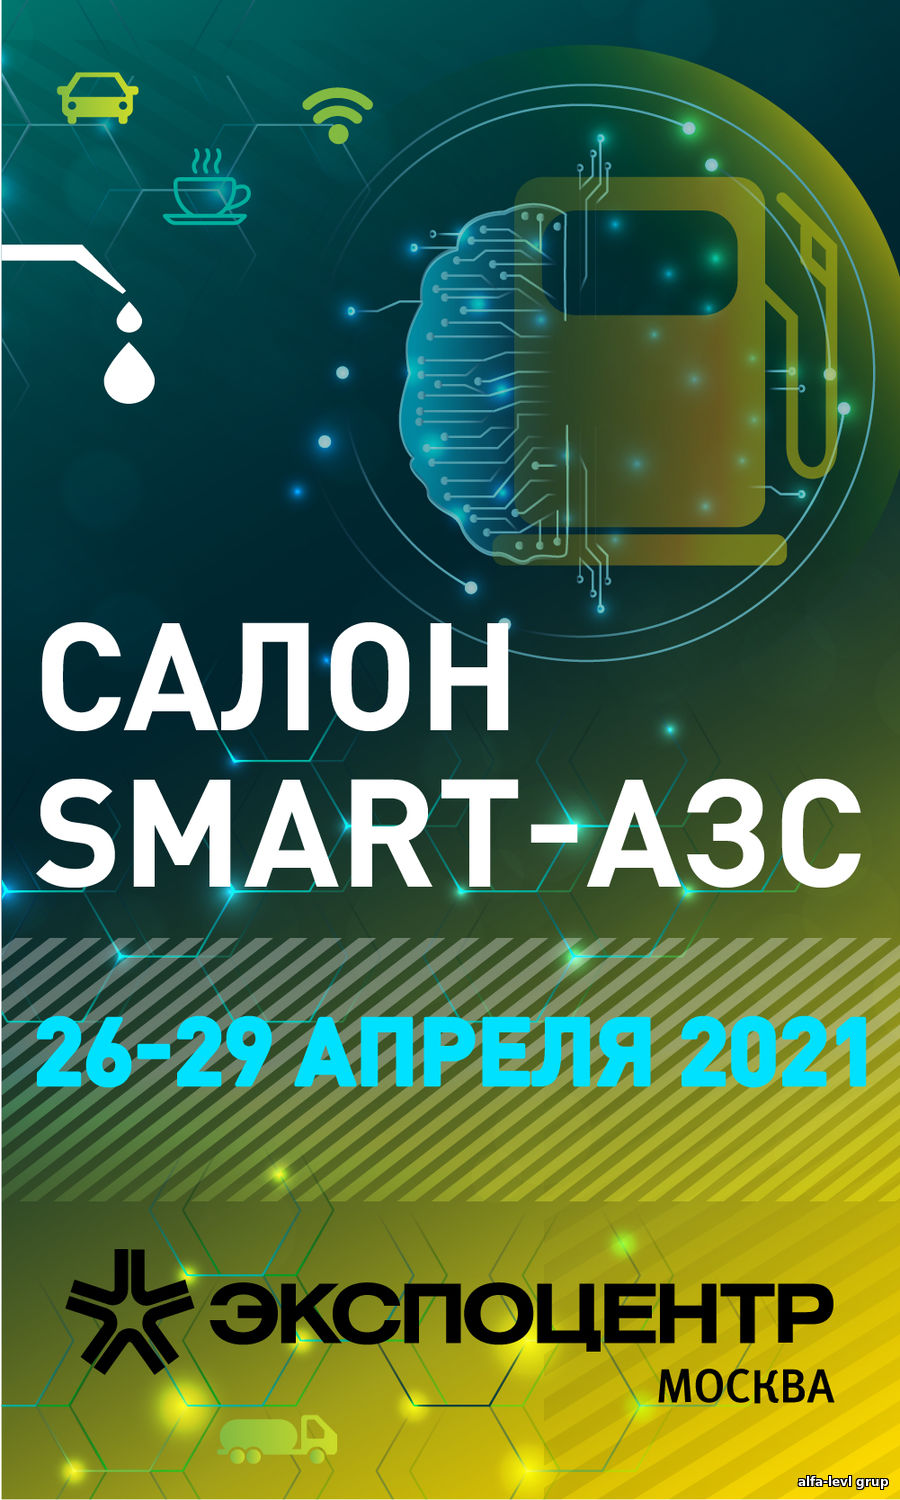 26-29 апреля 2021 г. в Москве состоится EXPO-САЛОН